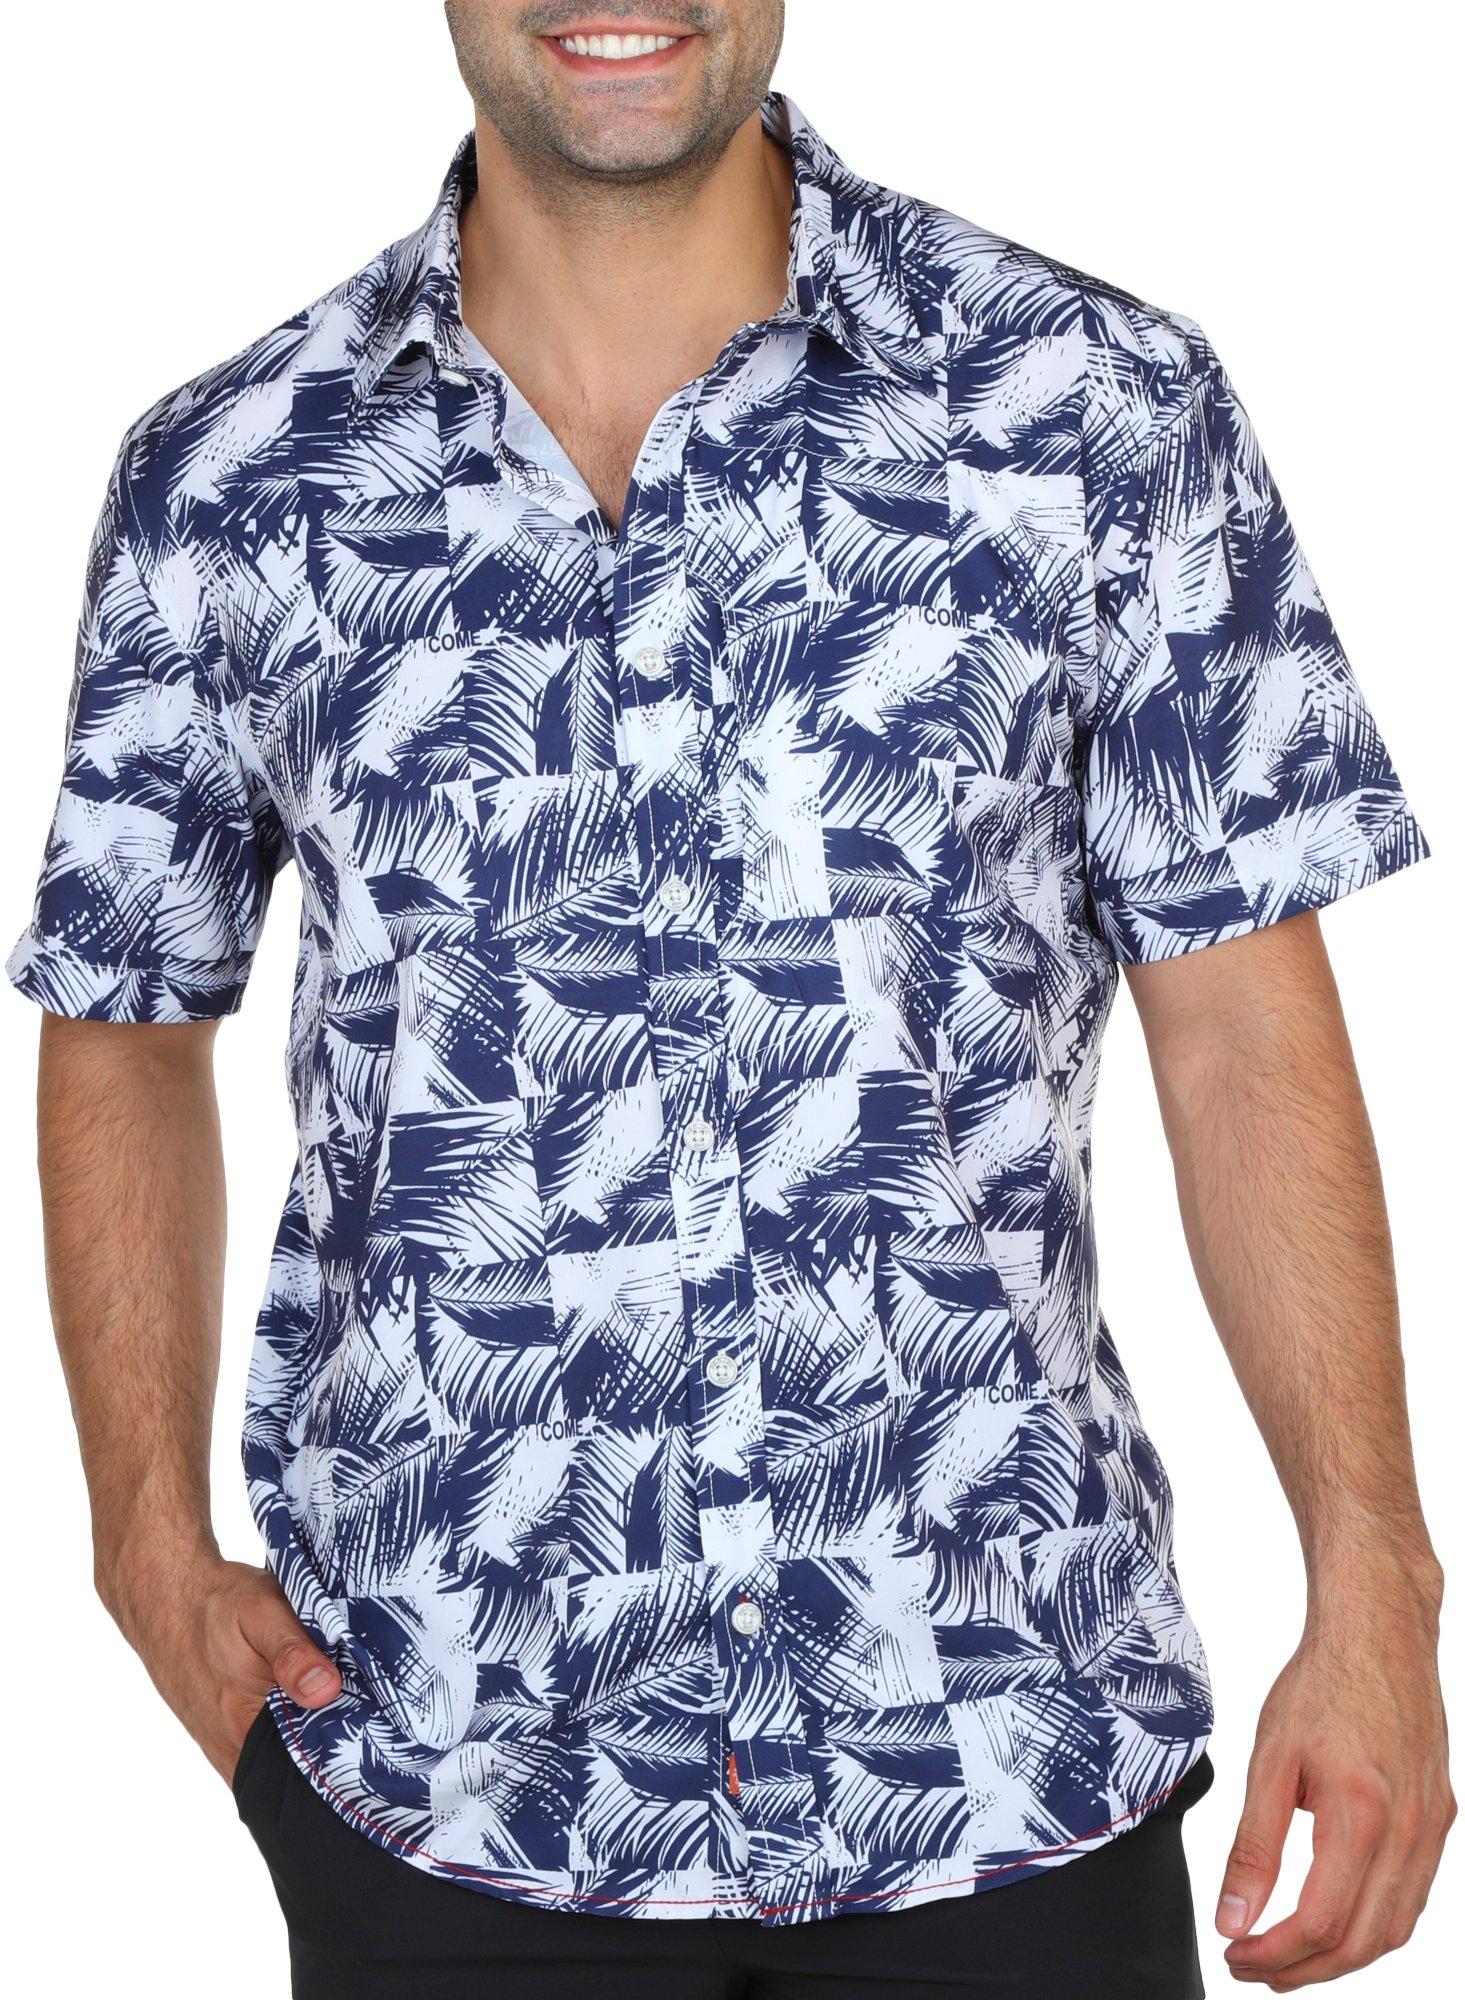 Mens Palm Leaves Print Short Sleeve Shirt